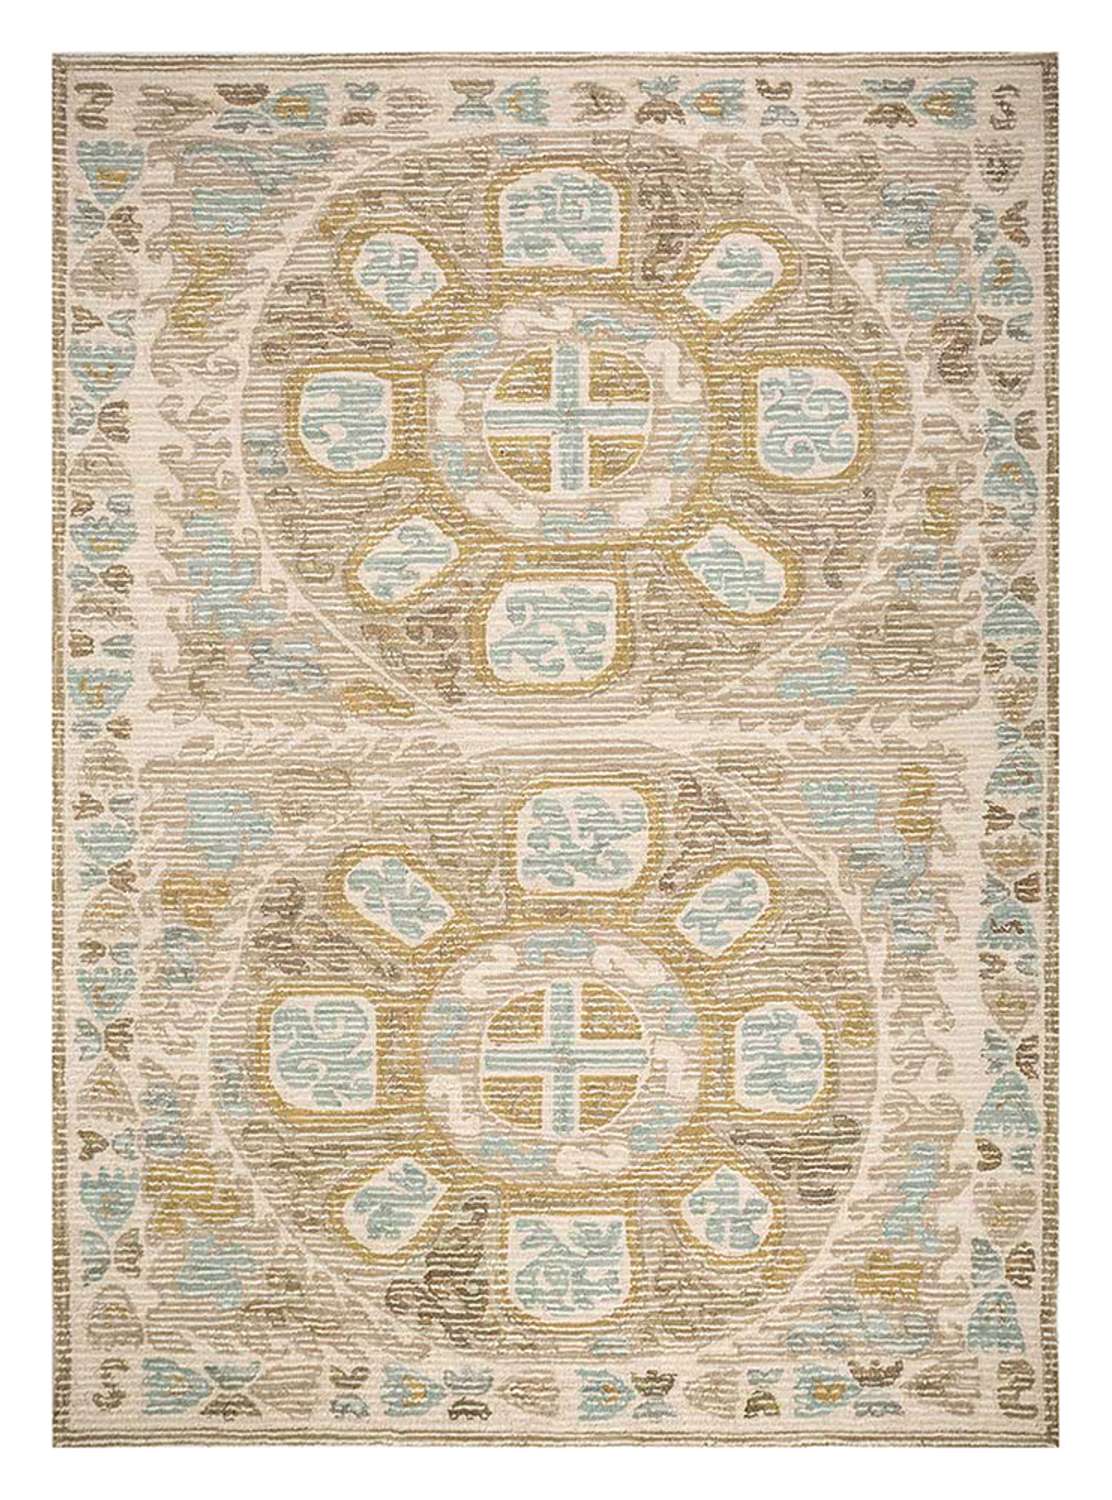 Wollen tapijt - 270 x 180 cm - beige